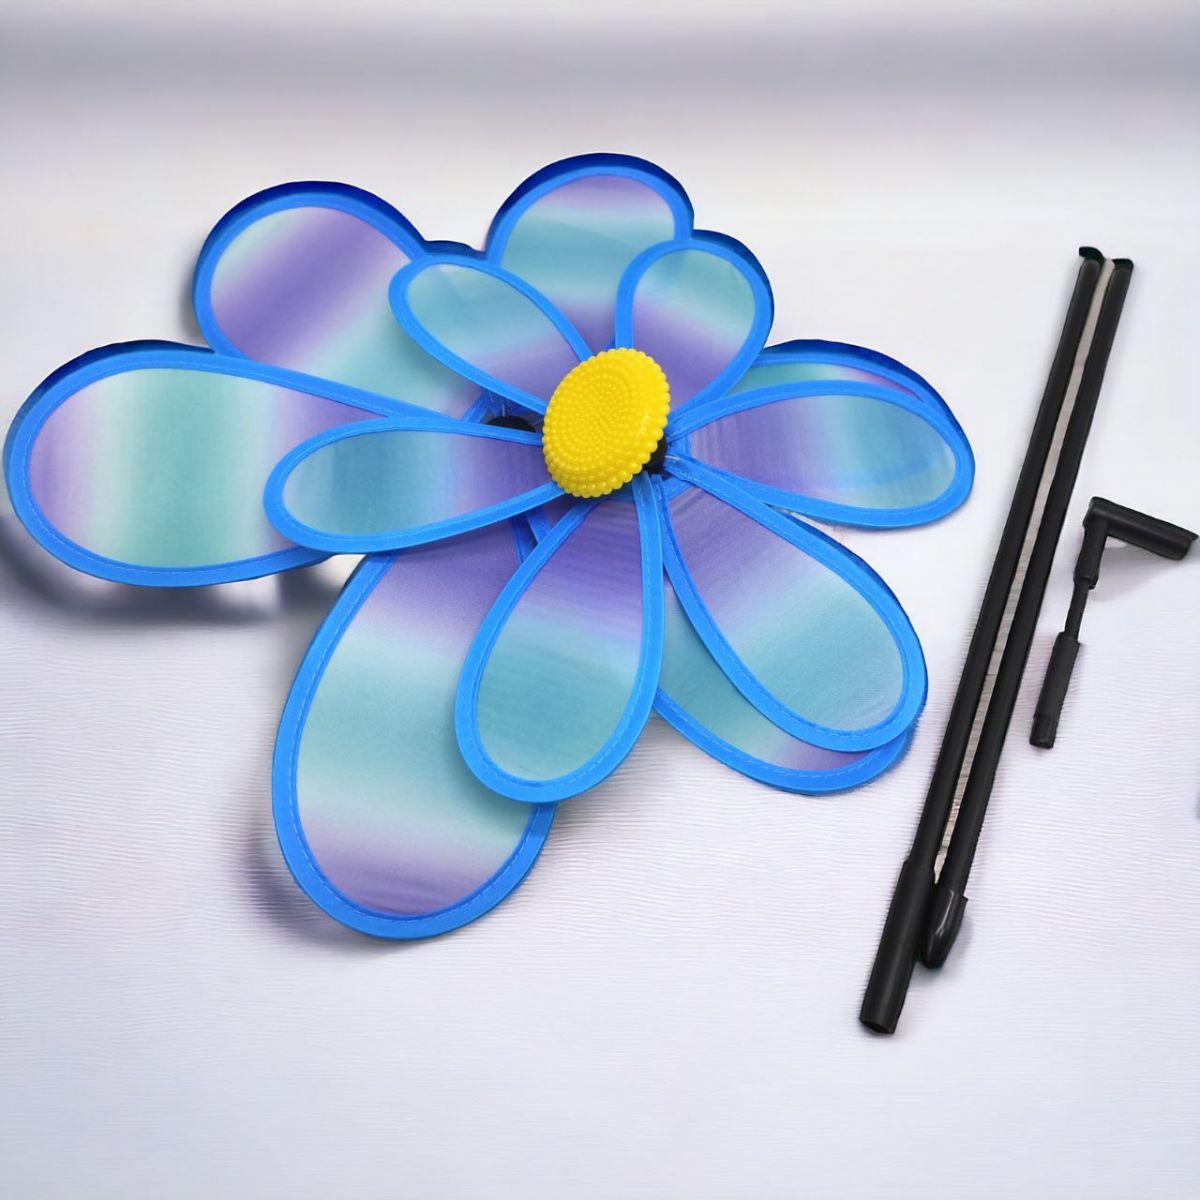 Ветрячок "Цветочек", диаметр 38 см, голубой